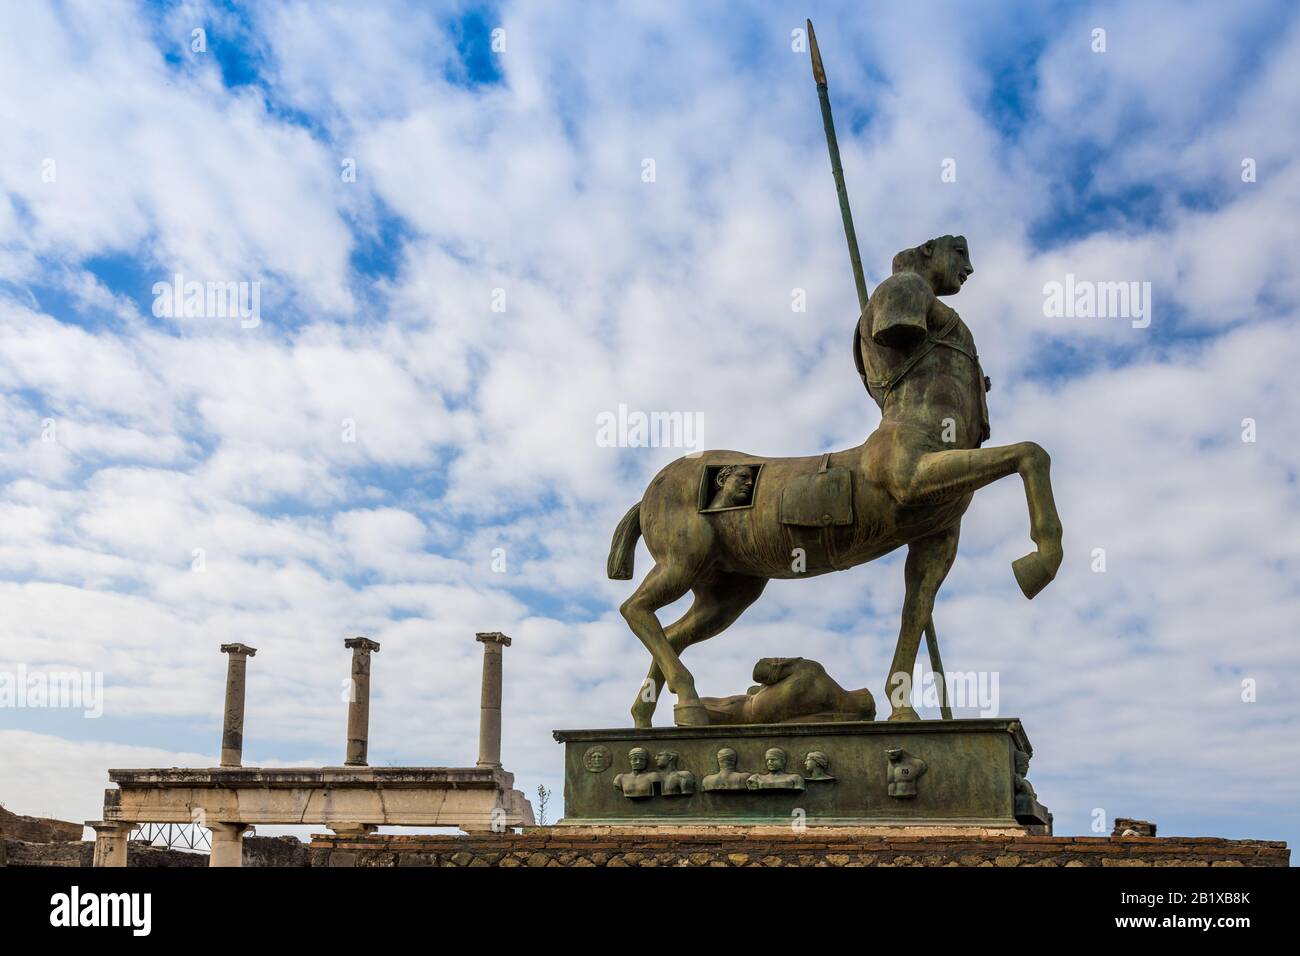 Italia, POMPEI - Oct 19, 2019: Statua del Centauro, antica città romana distrutta dall'eruzione del Vesuvio nel 79 d.C. Pompei è un mondo dell'UNESCO Foto Stock